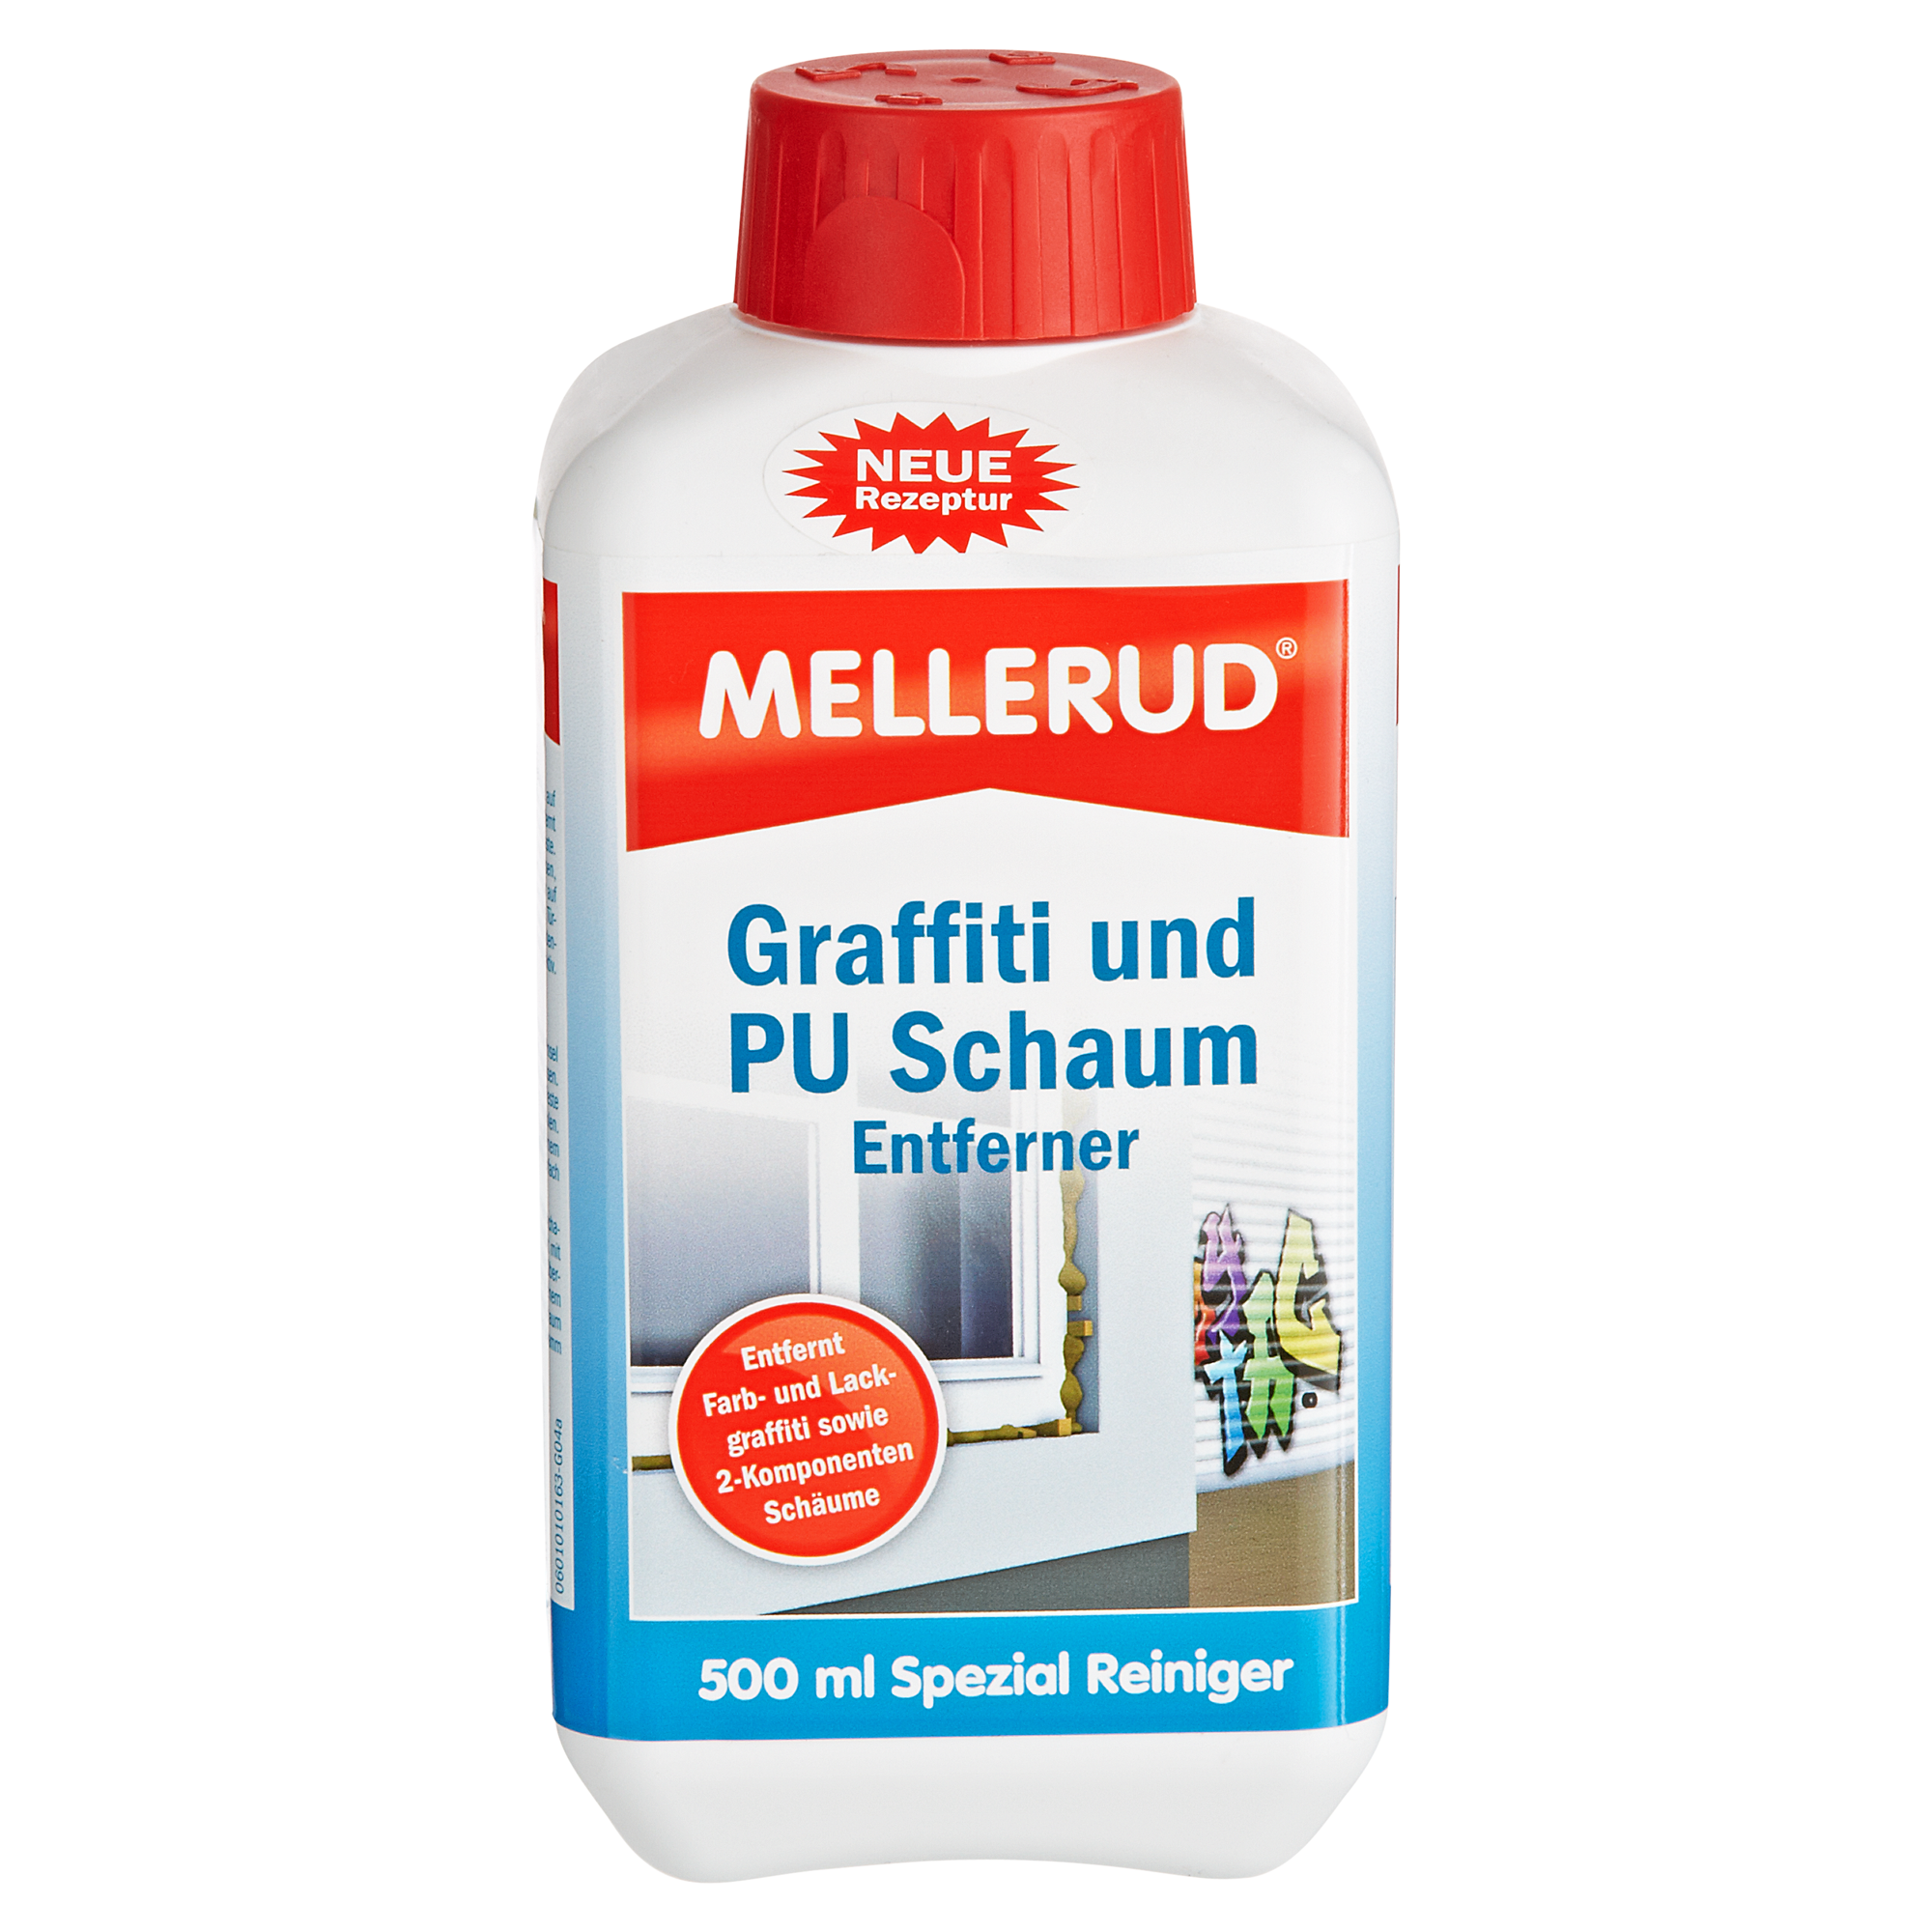 Entferner für Graffiti und PU-Schaum 500 ml + product picture